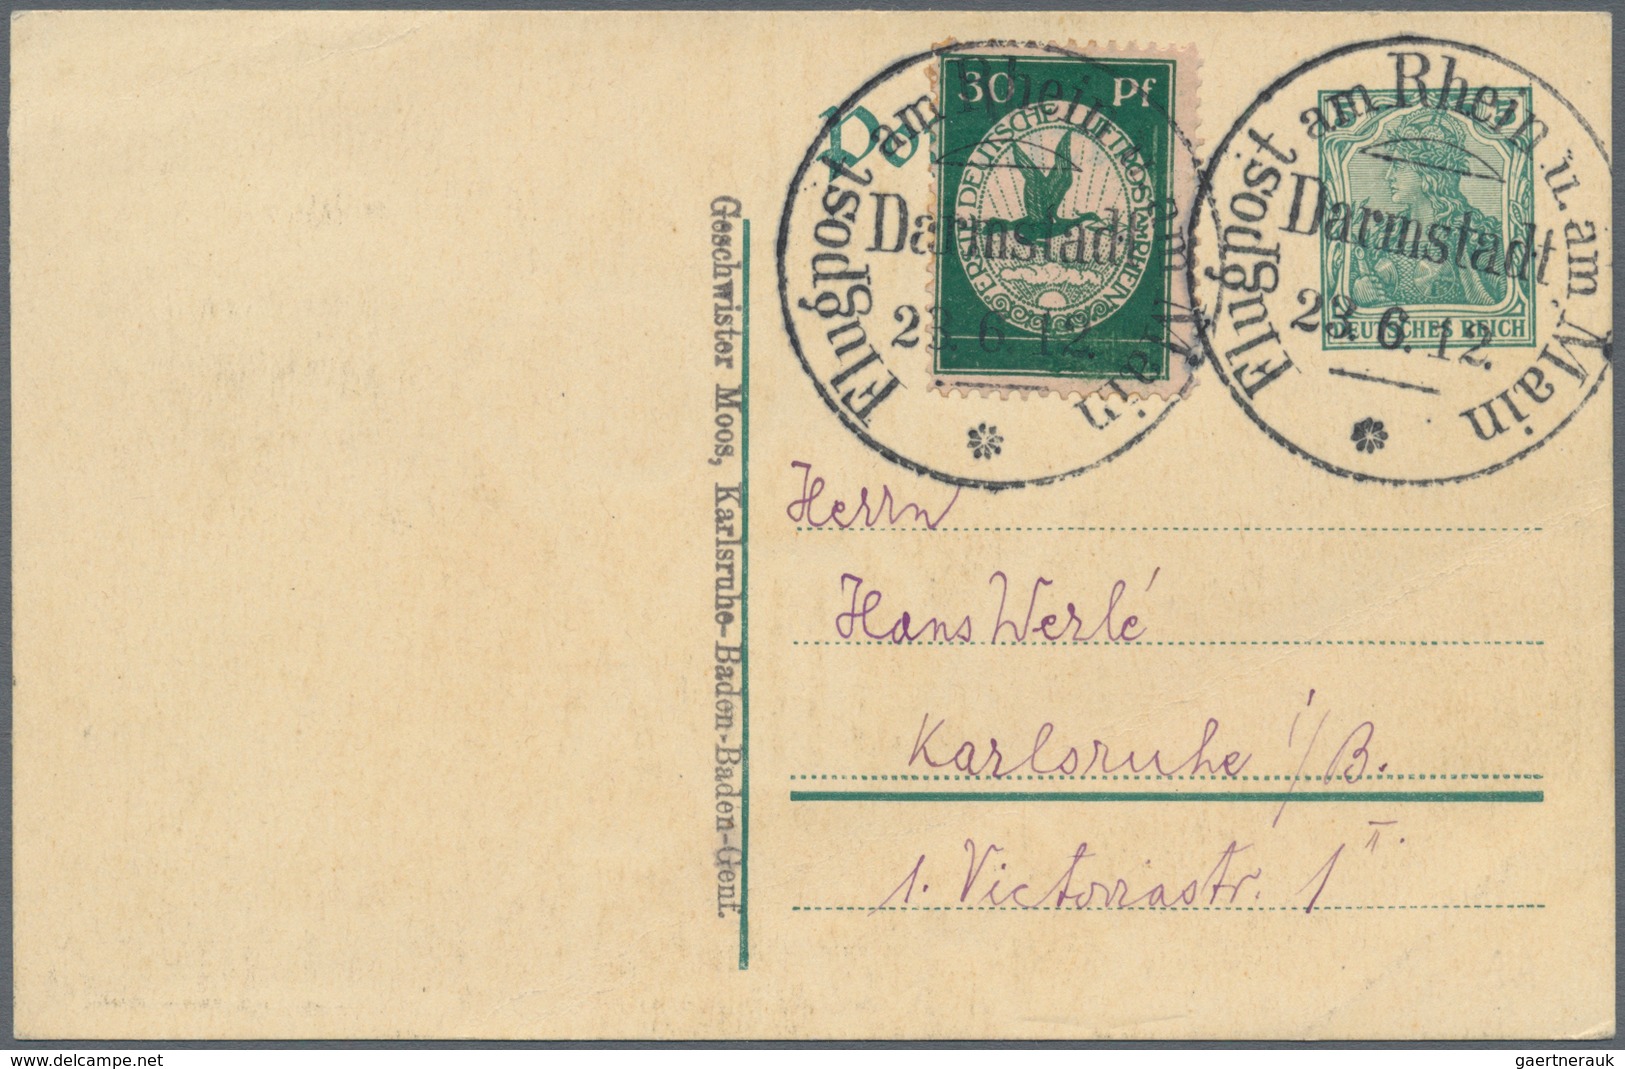 00623 Flugpost Deutschland: 1912 Airmail Rhein Main 23.6. Darmstadt, With 30pf Green (Mi. III) On 5pf Germ - Luft- Und Zeppelinpost